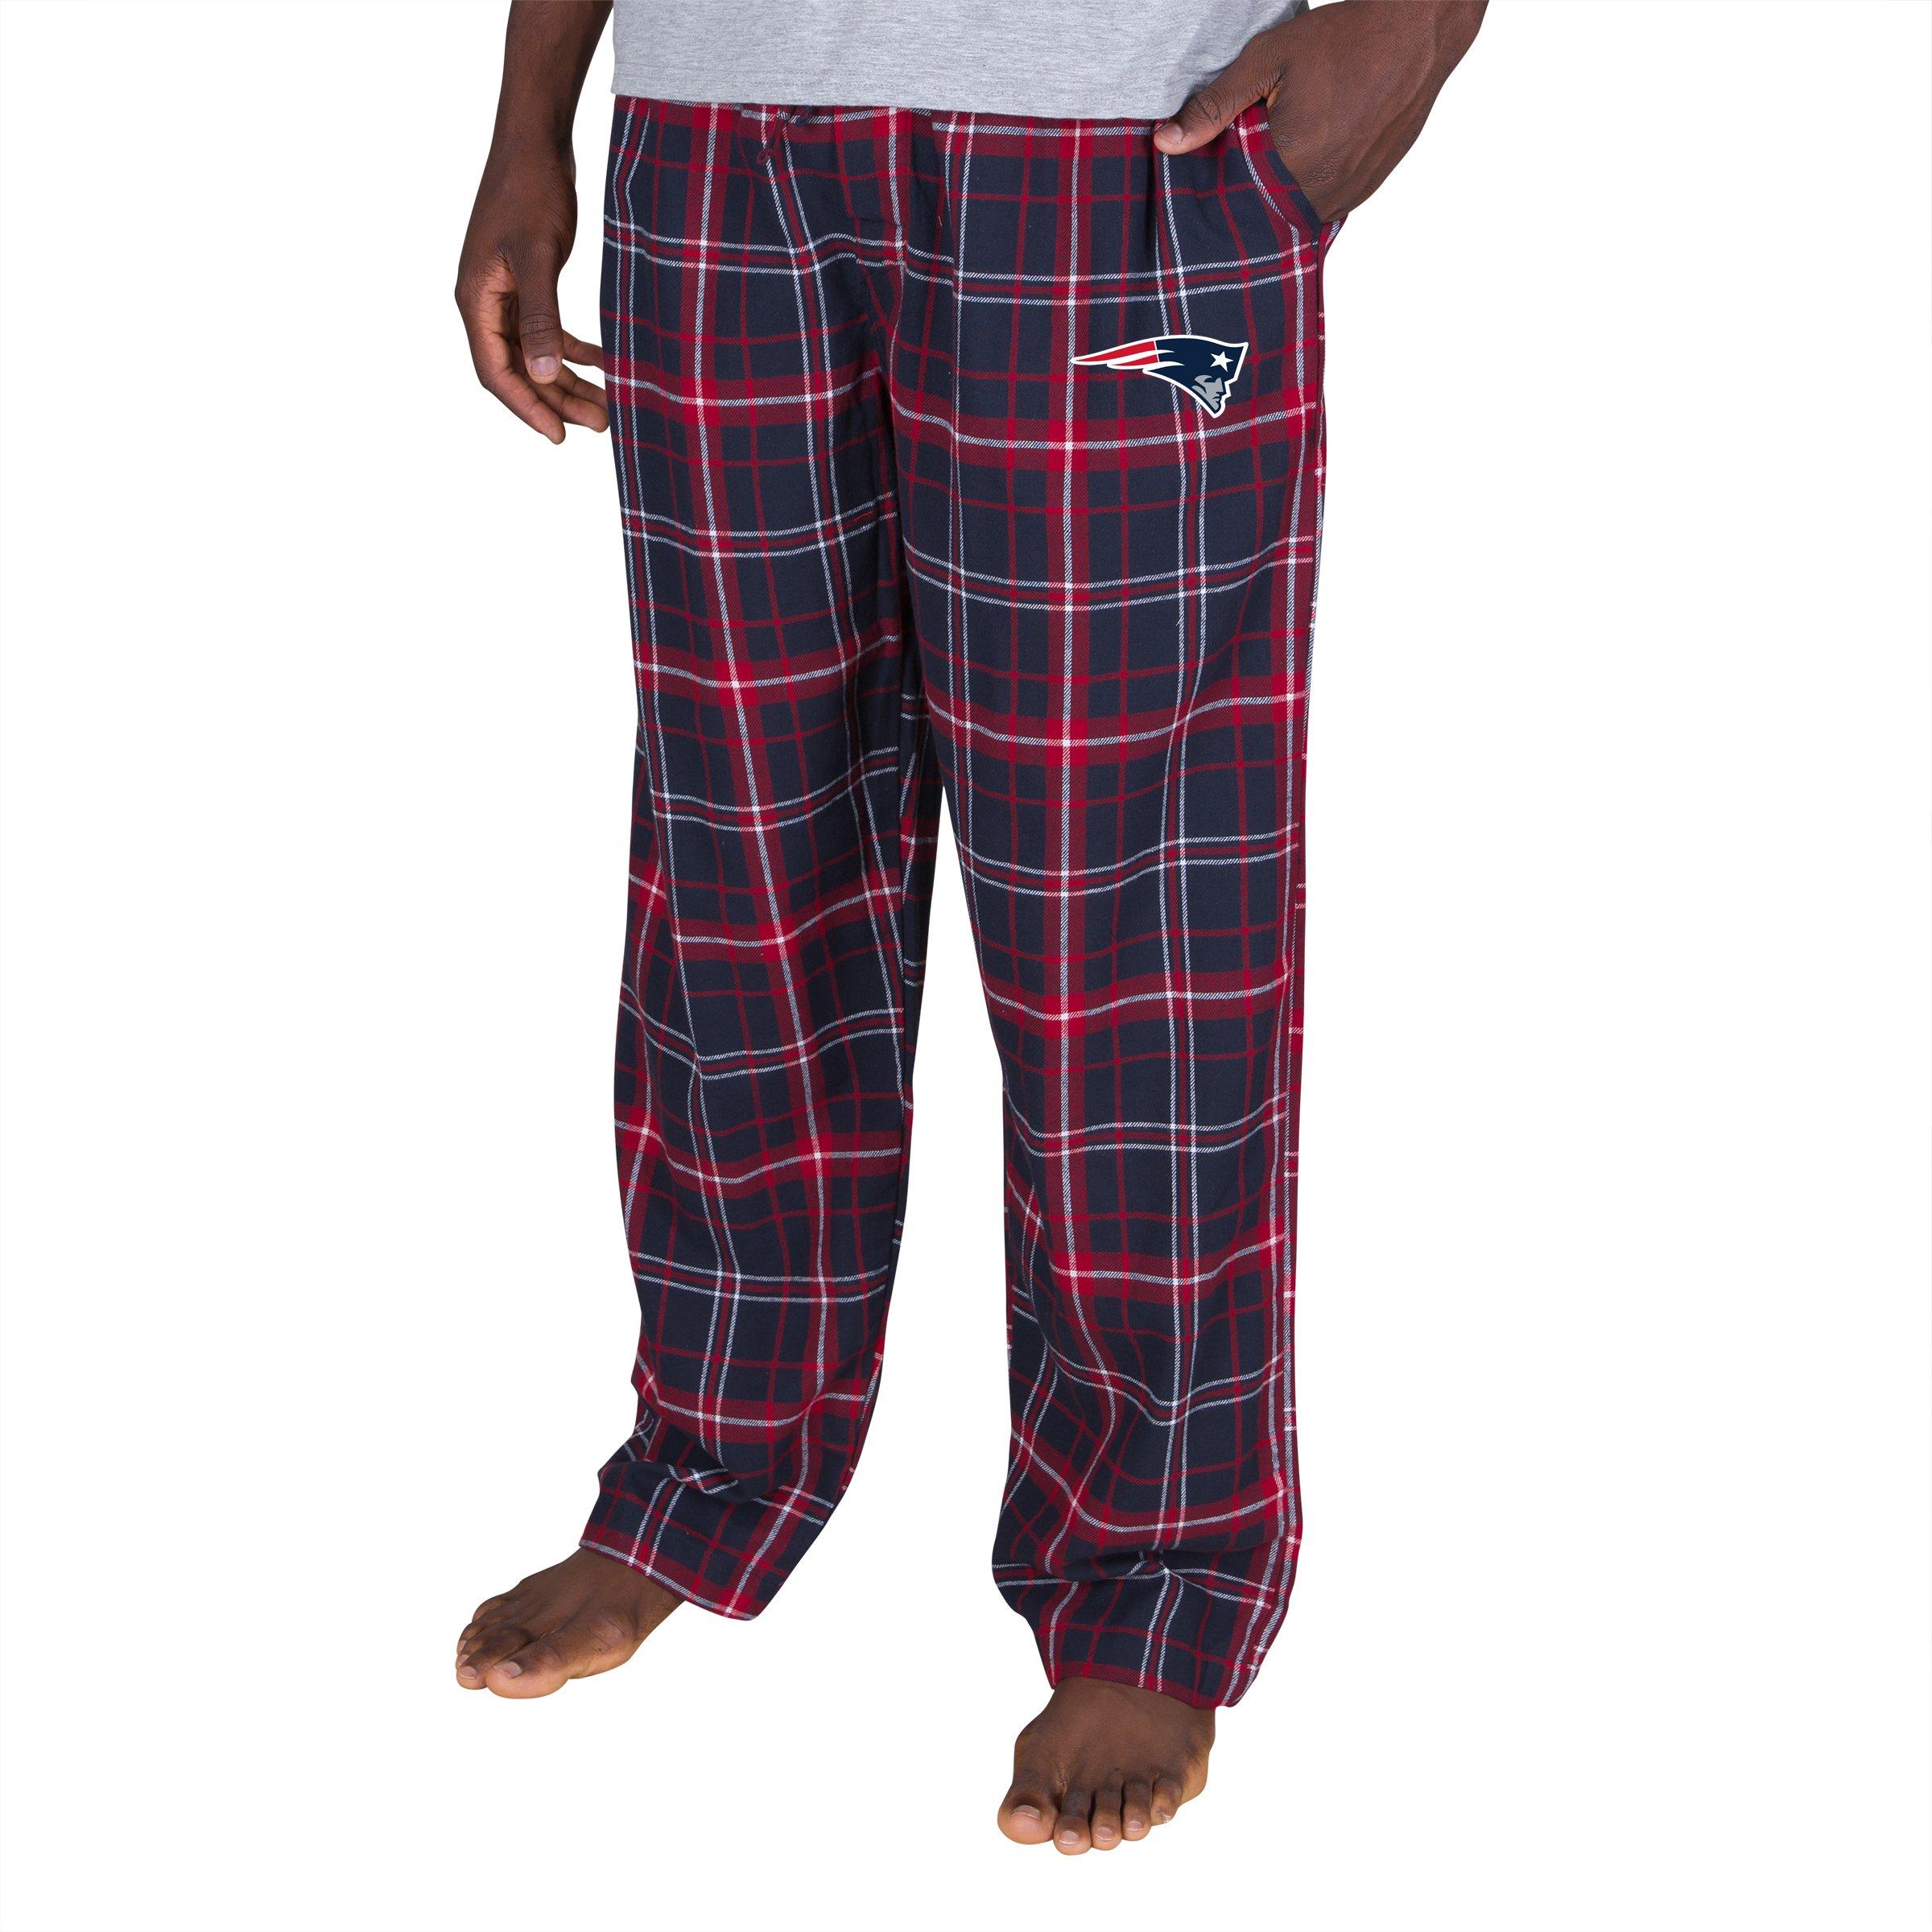 New England Patriots Preschool Team Pajama Pants - Navy